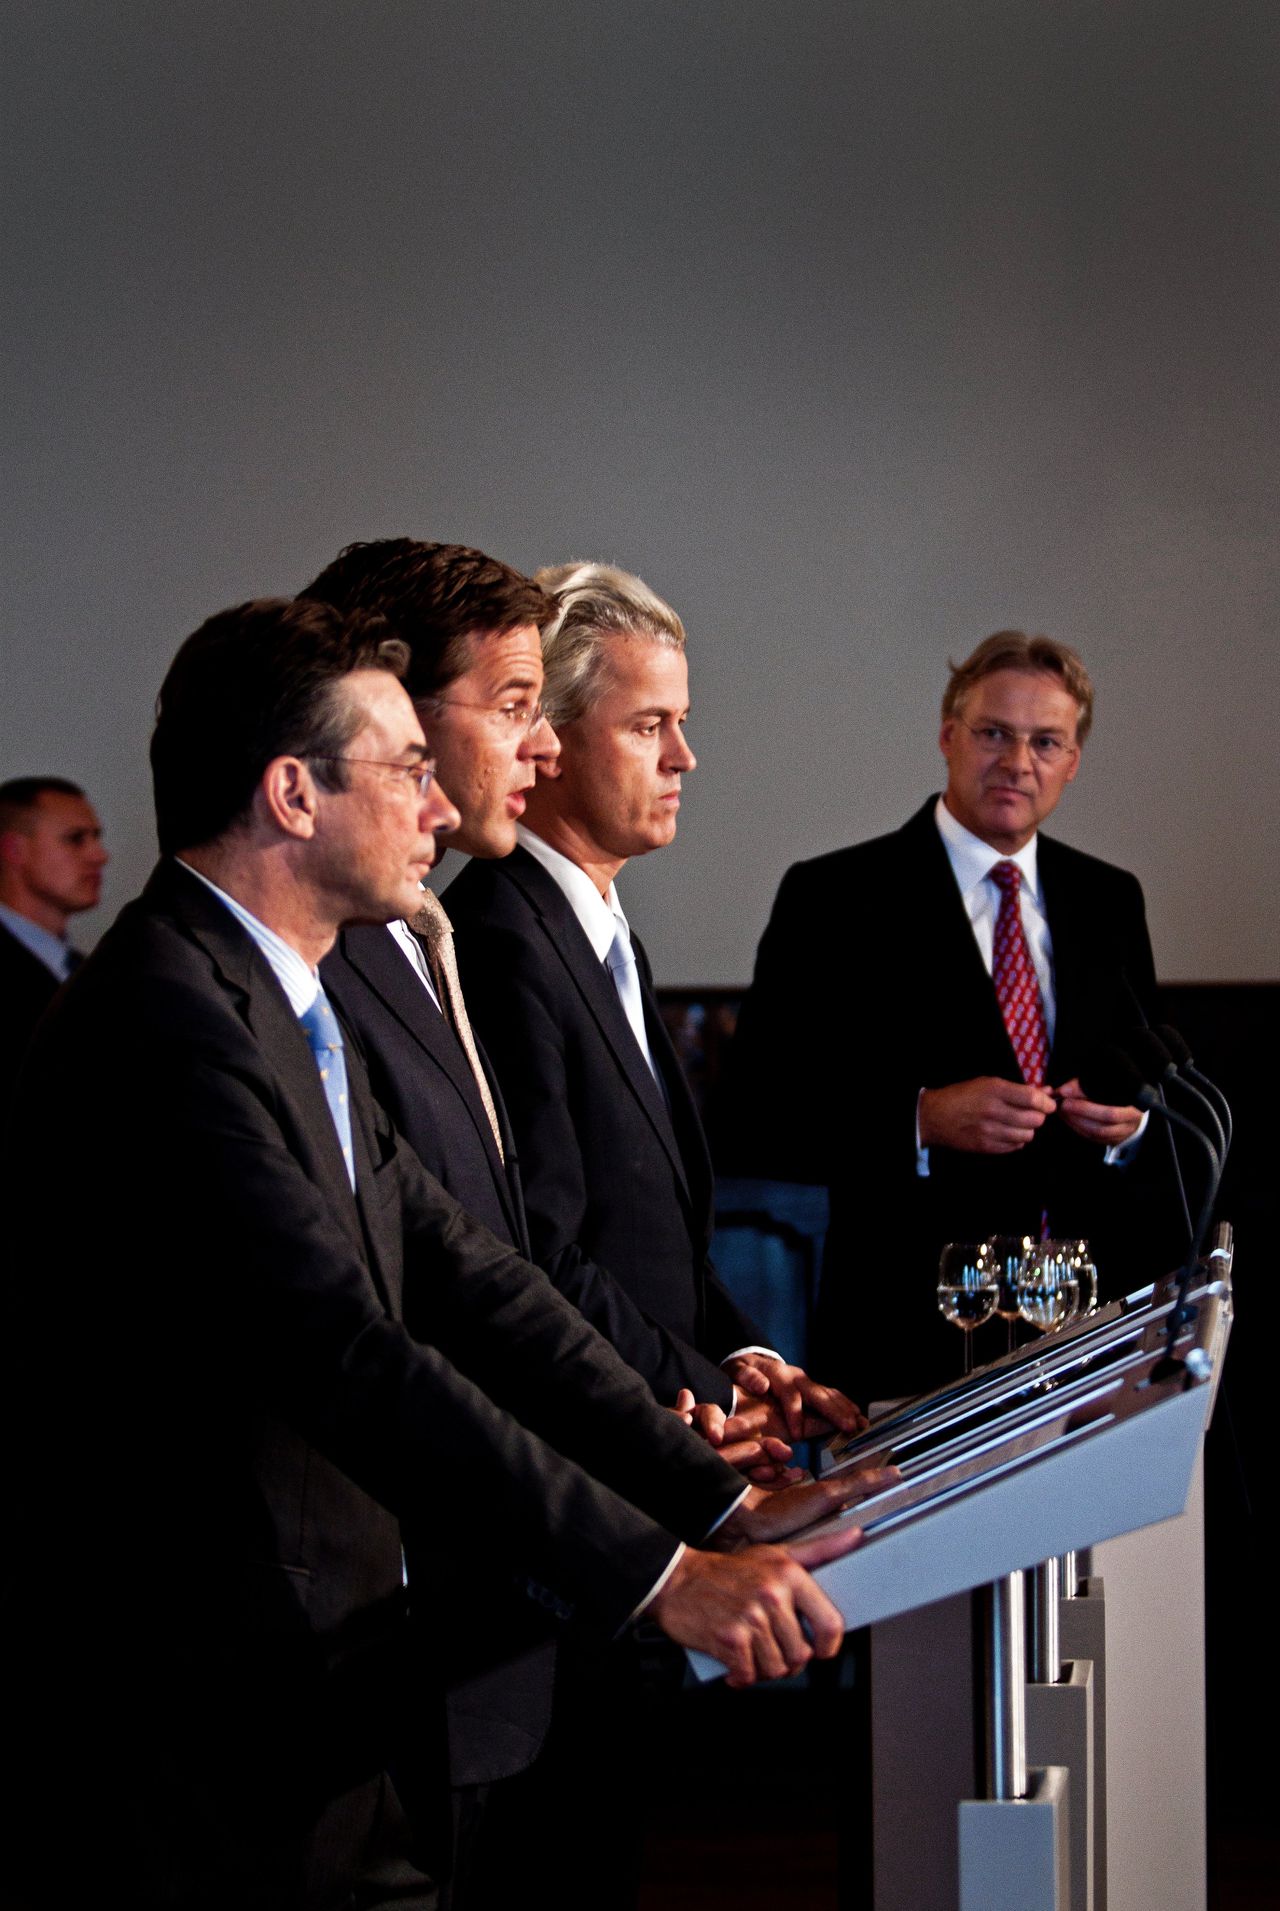 Presentatie van het gedoogakkoord van CDA, VVD en PVV in 2010. Van voren naar achteren: door Maxime Verhagen (CDA), Mark Rutte (VVD) en Geert Wilders (PVV).